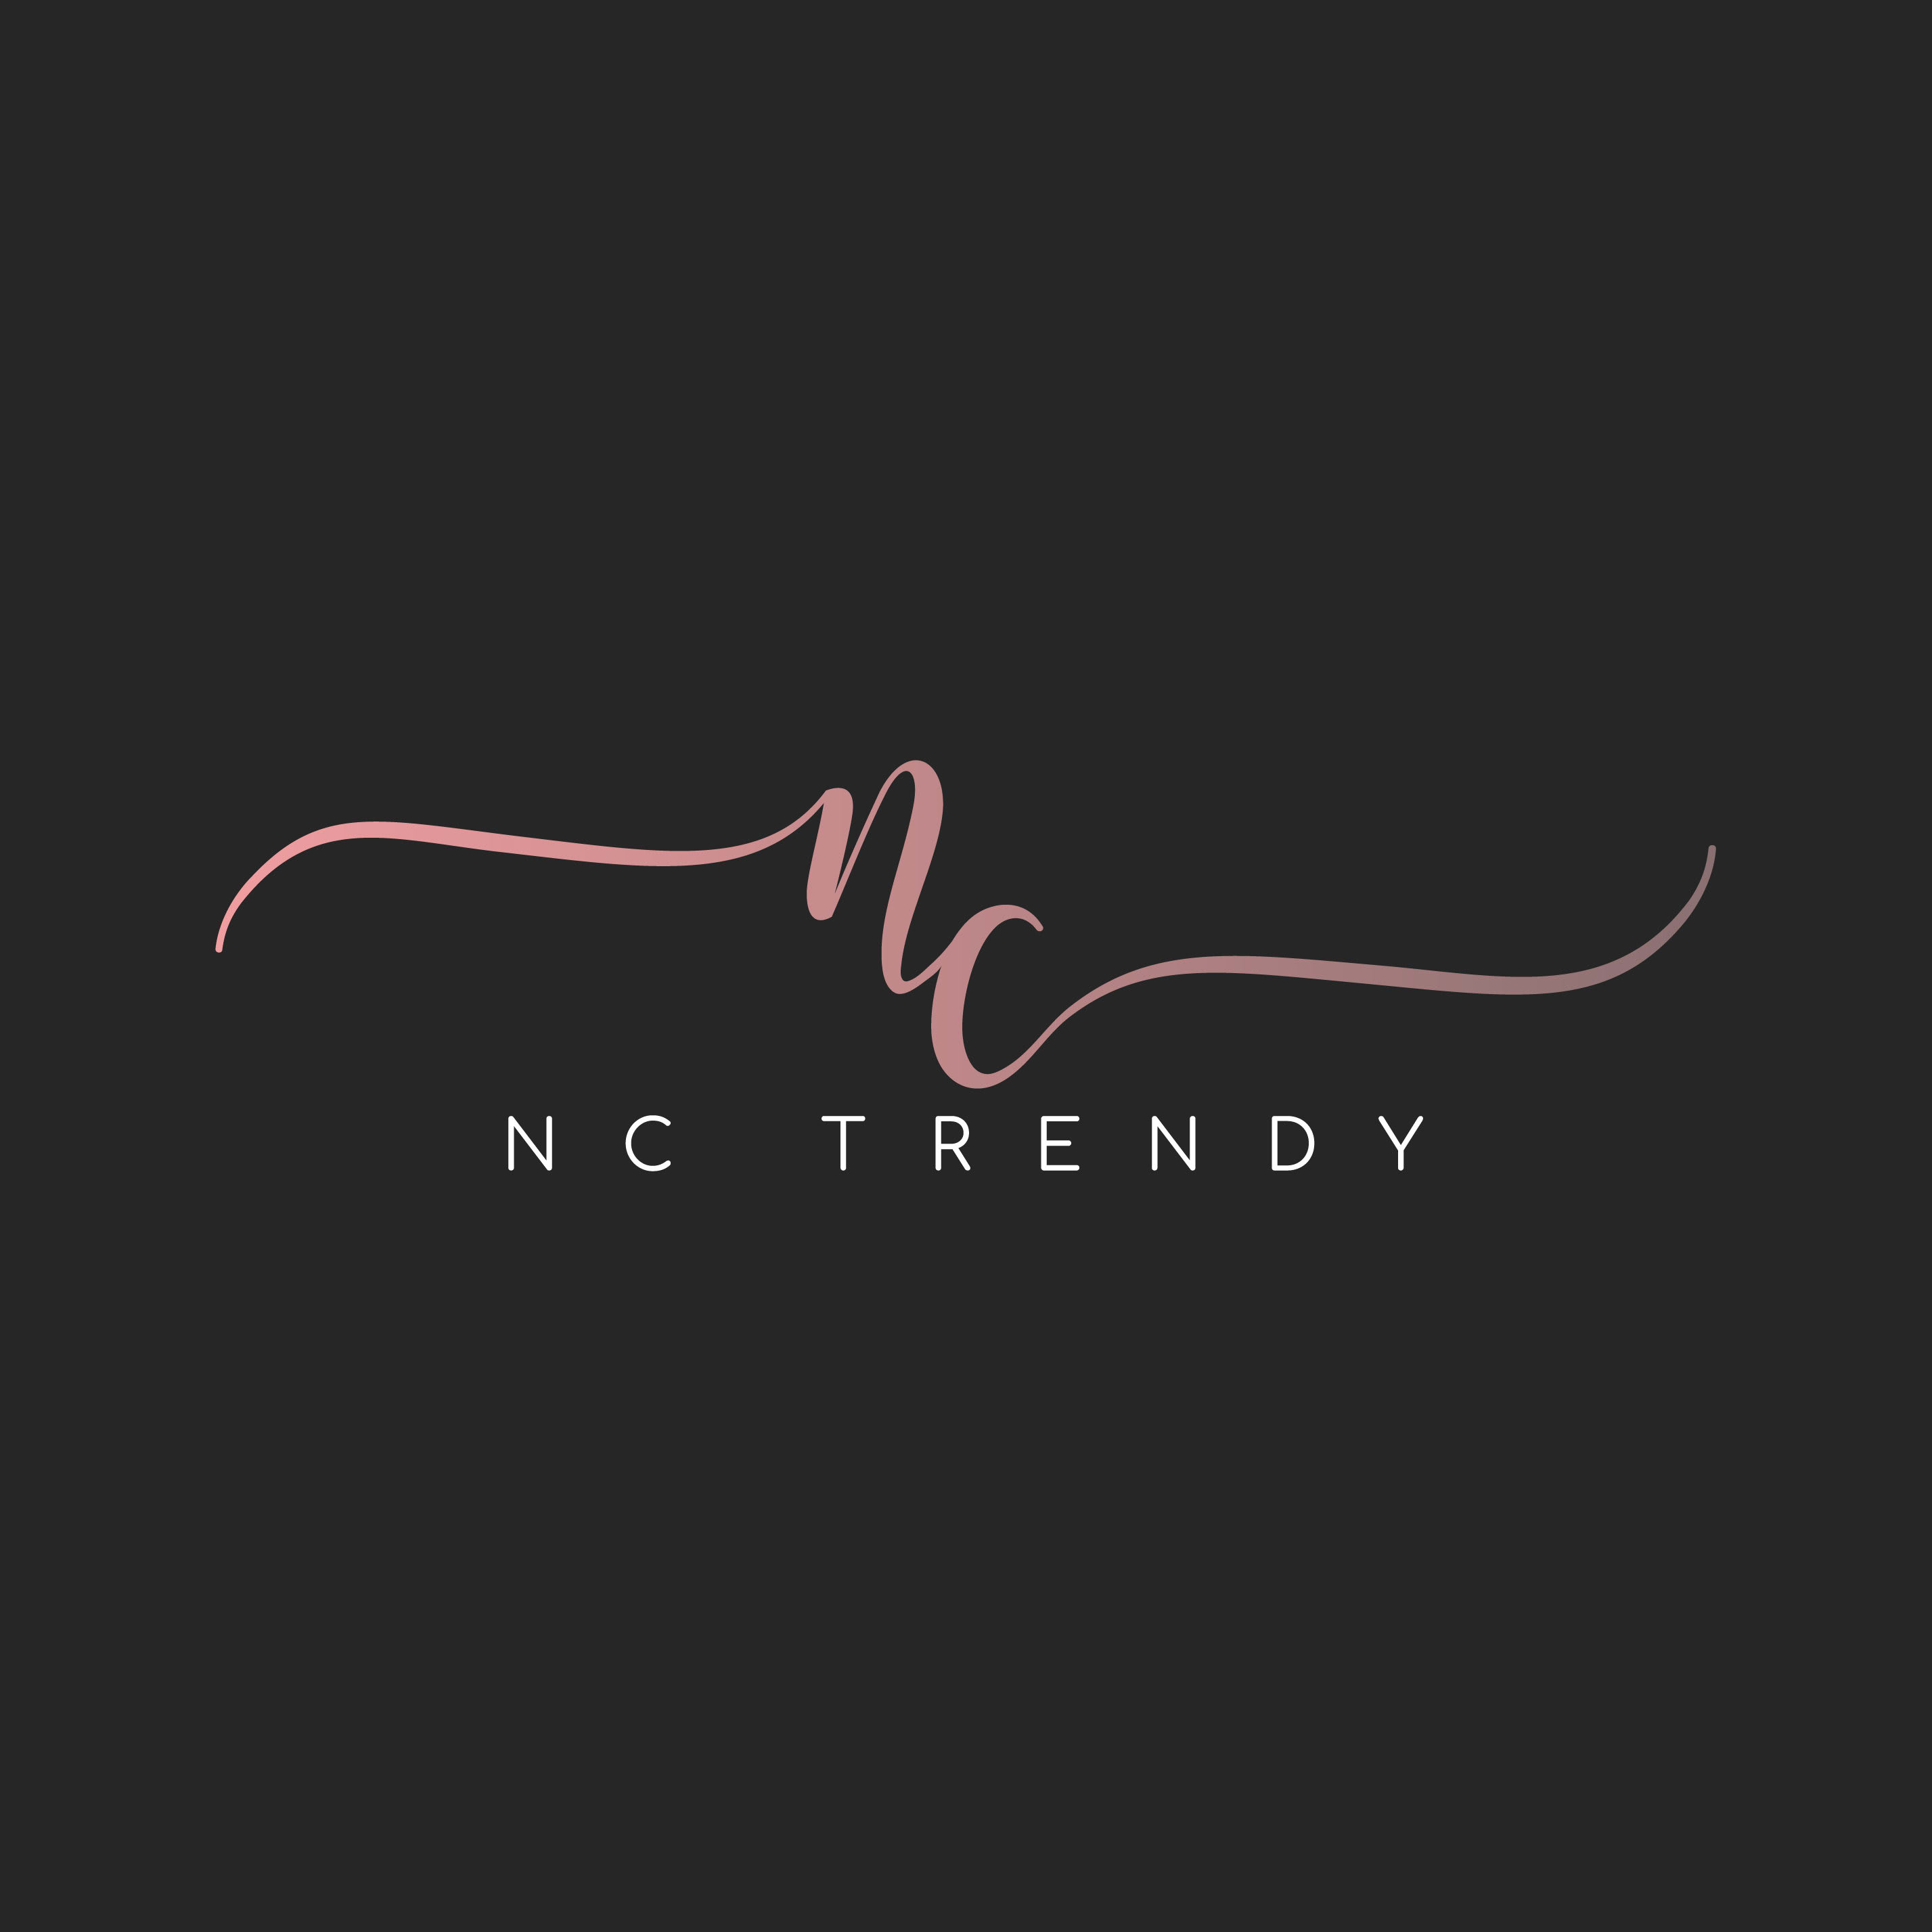 NC Trendy